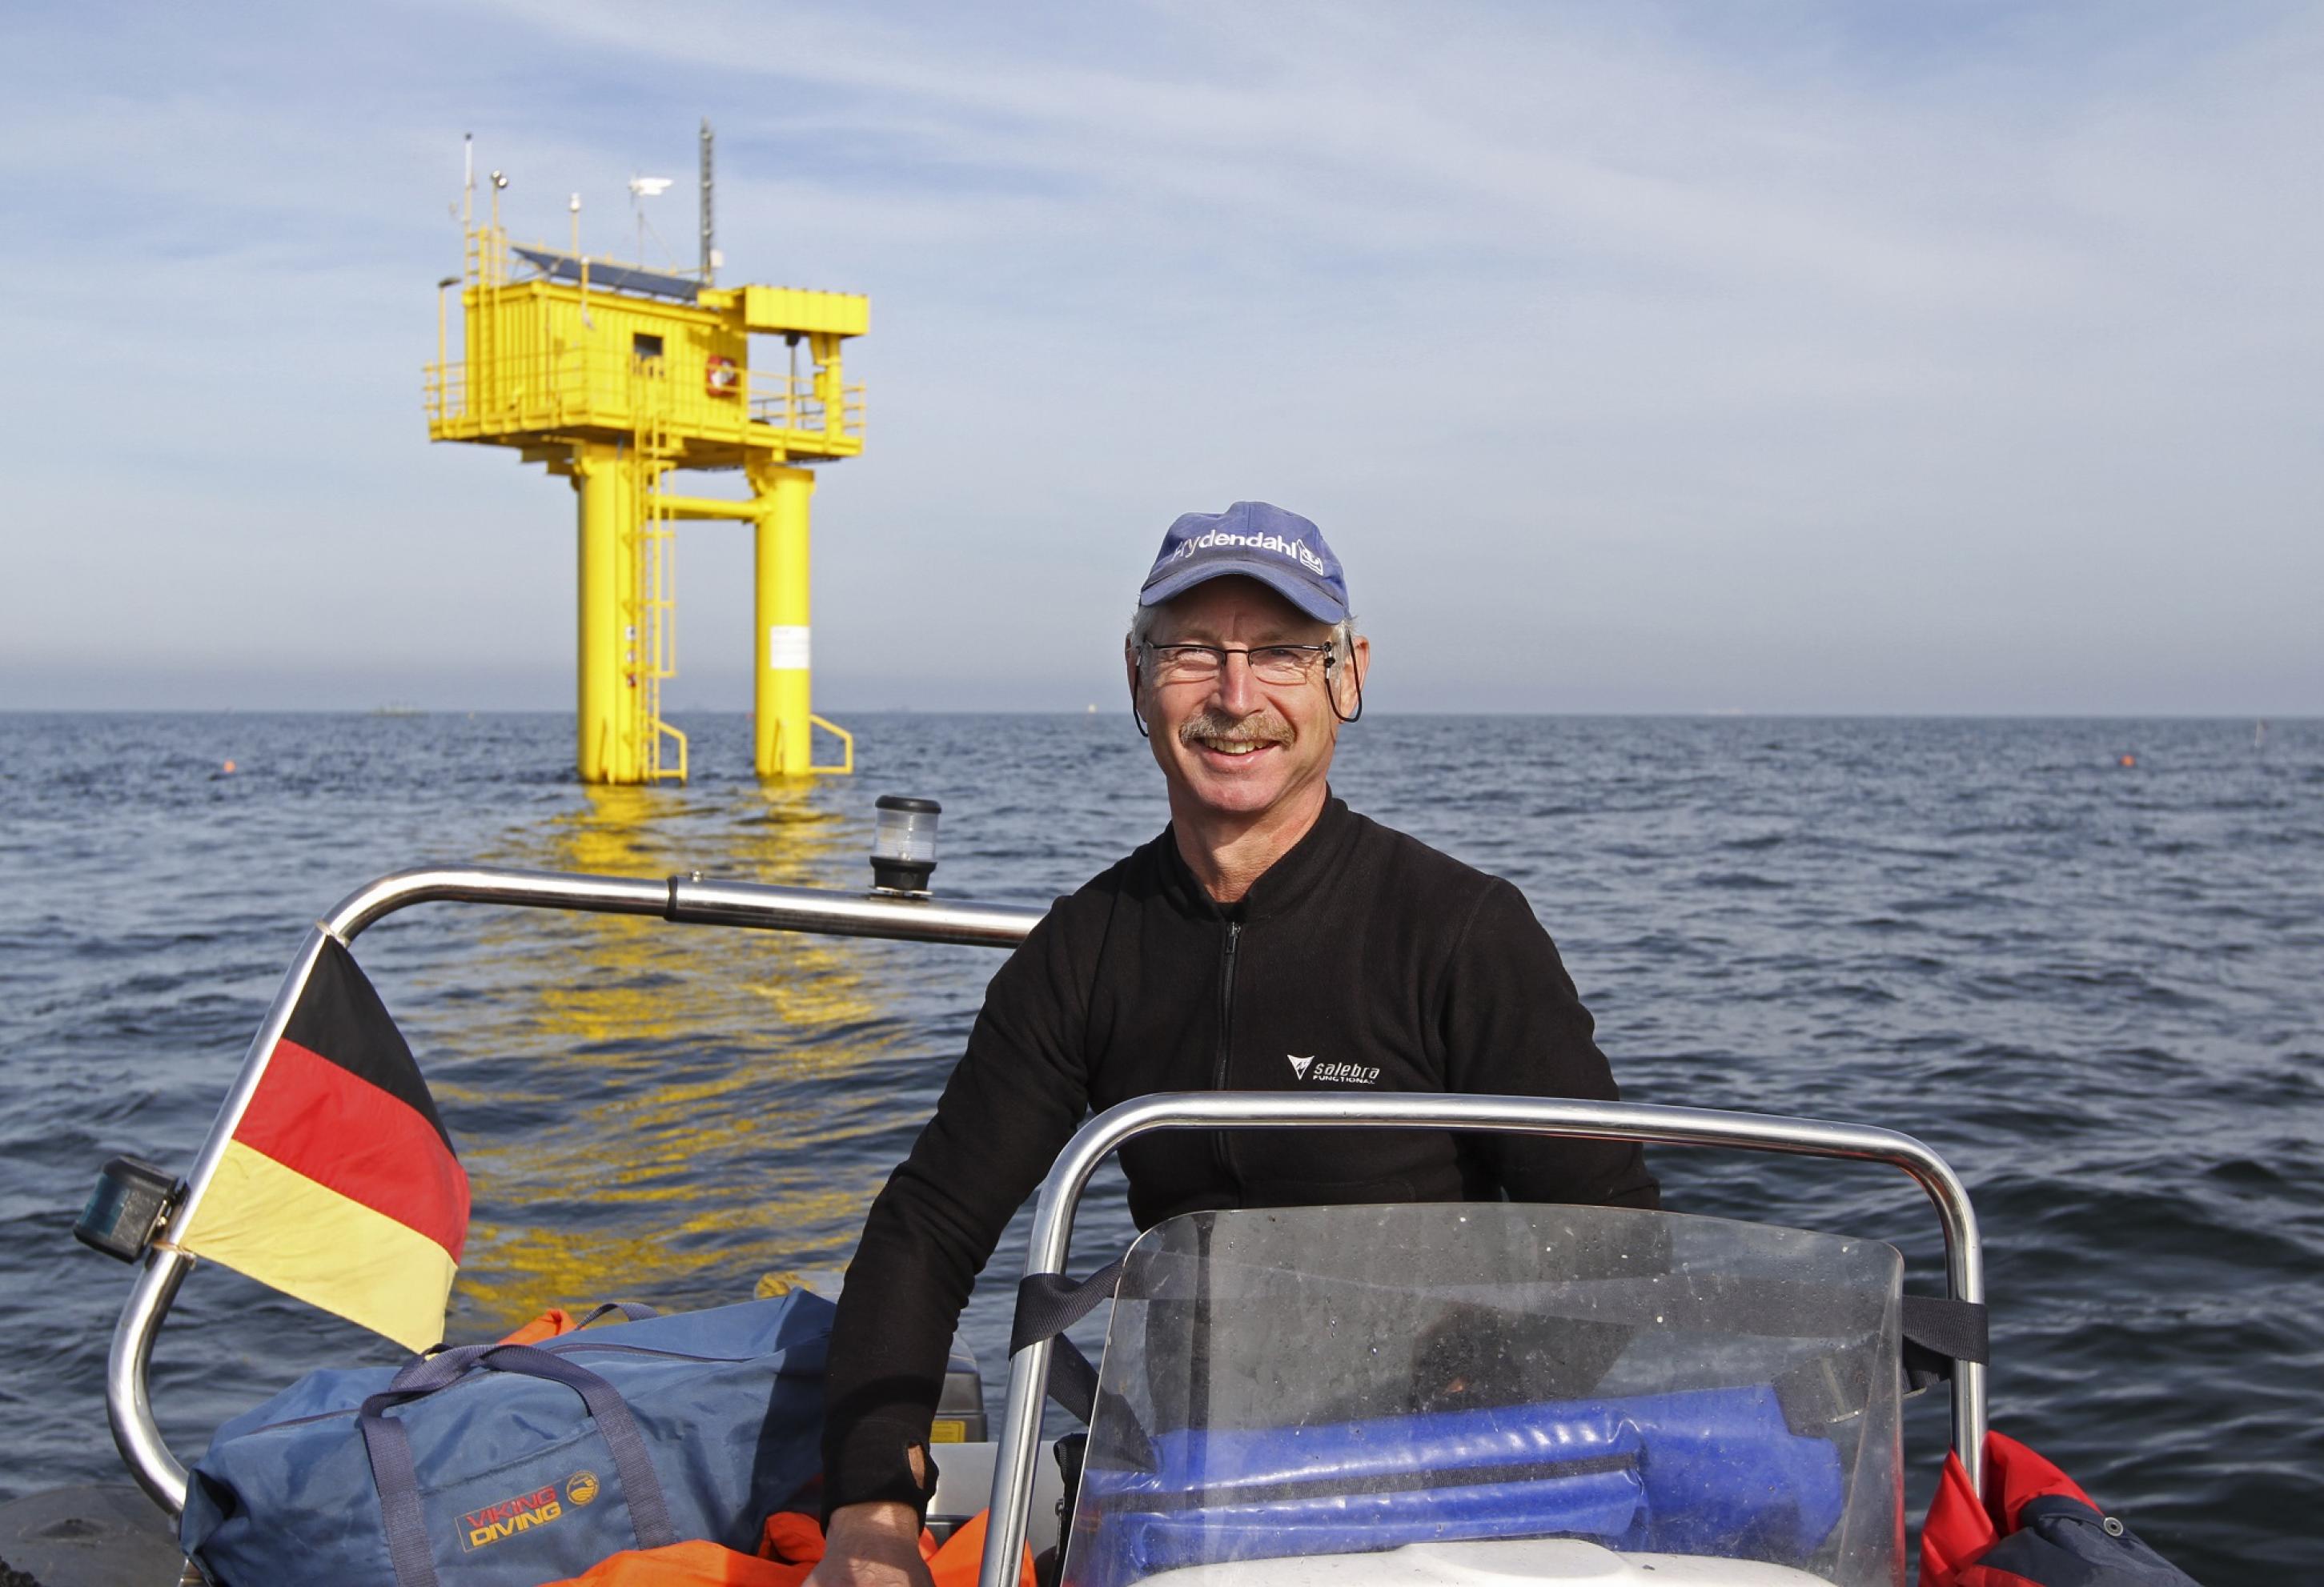 Älterer Mann auf einem Boot auf dem Meer, im Hintergrund eine gelbe Plattform, die aus dem Wasser ragt